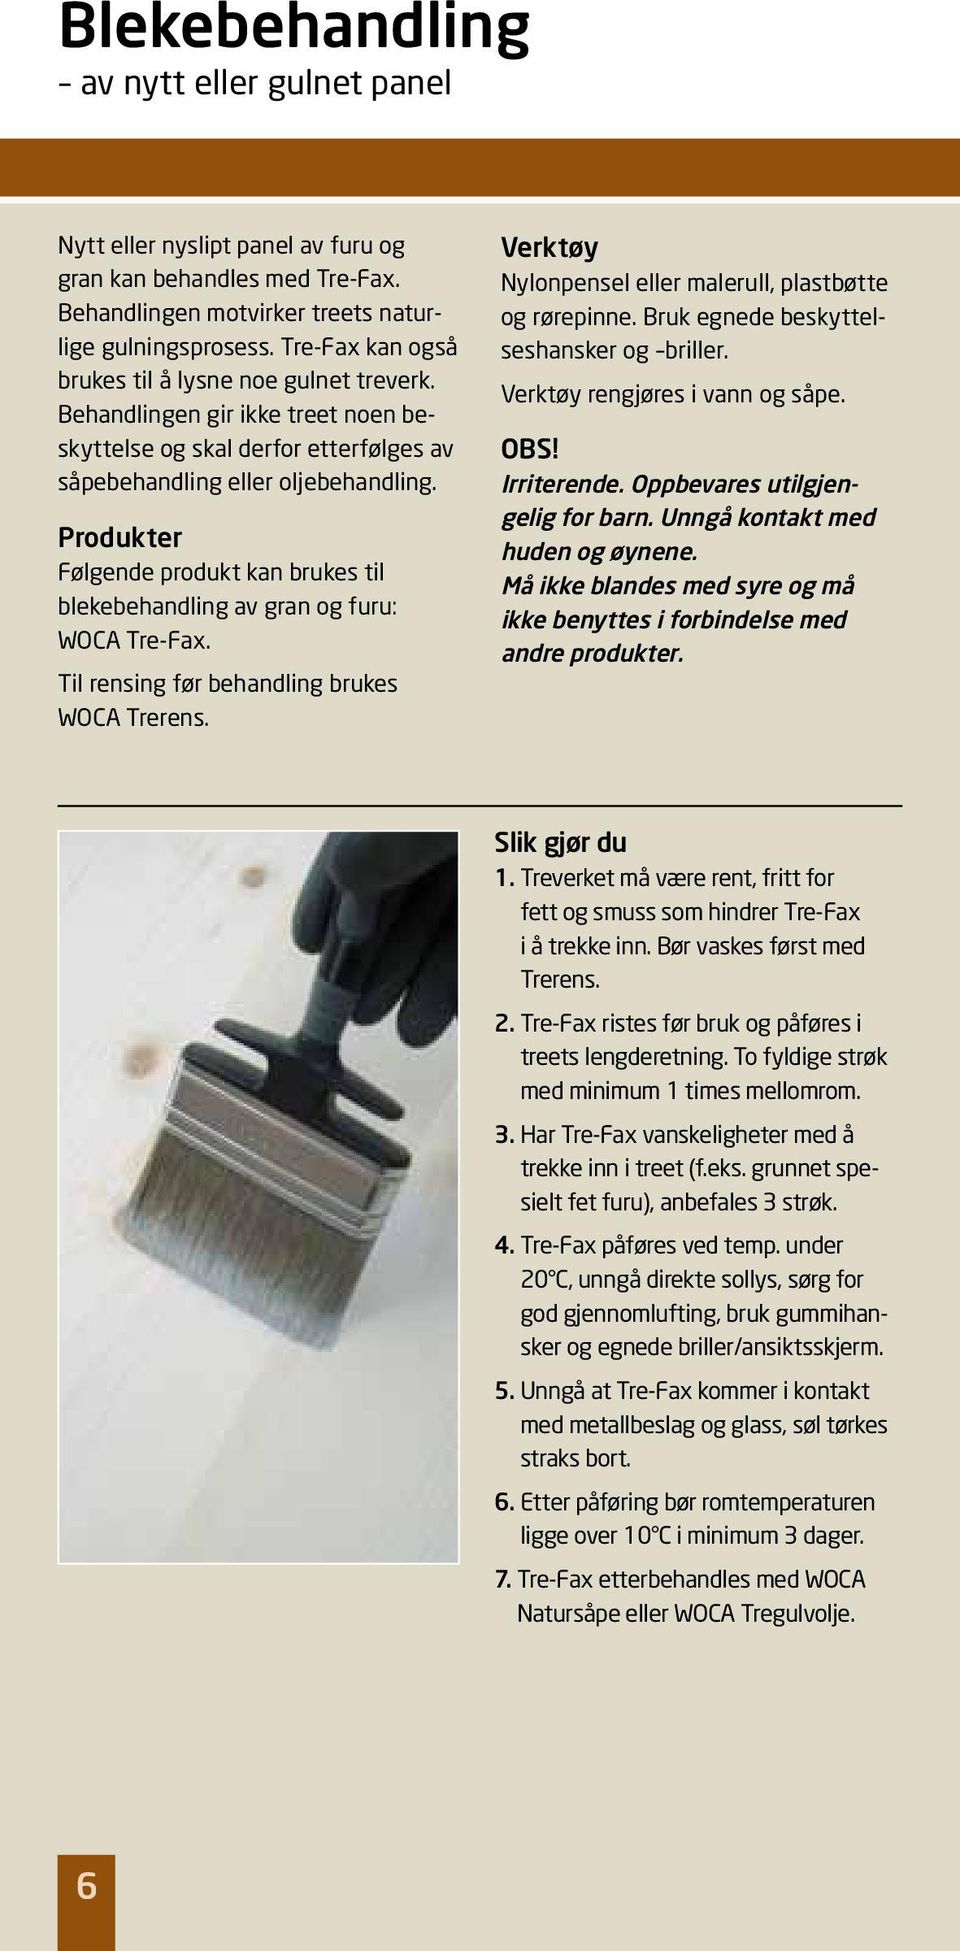 Følgende produkt kan brukes til blekebehandling av gran og furu: WOCA Tre-Fax. Til rensing før behandling brukes WOCA Trerens. Nylonpensel eller malerull, plastbøtte og rørepinne.